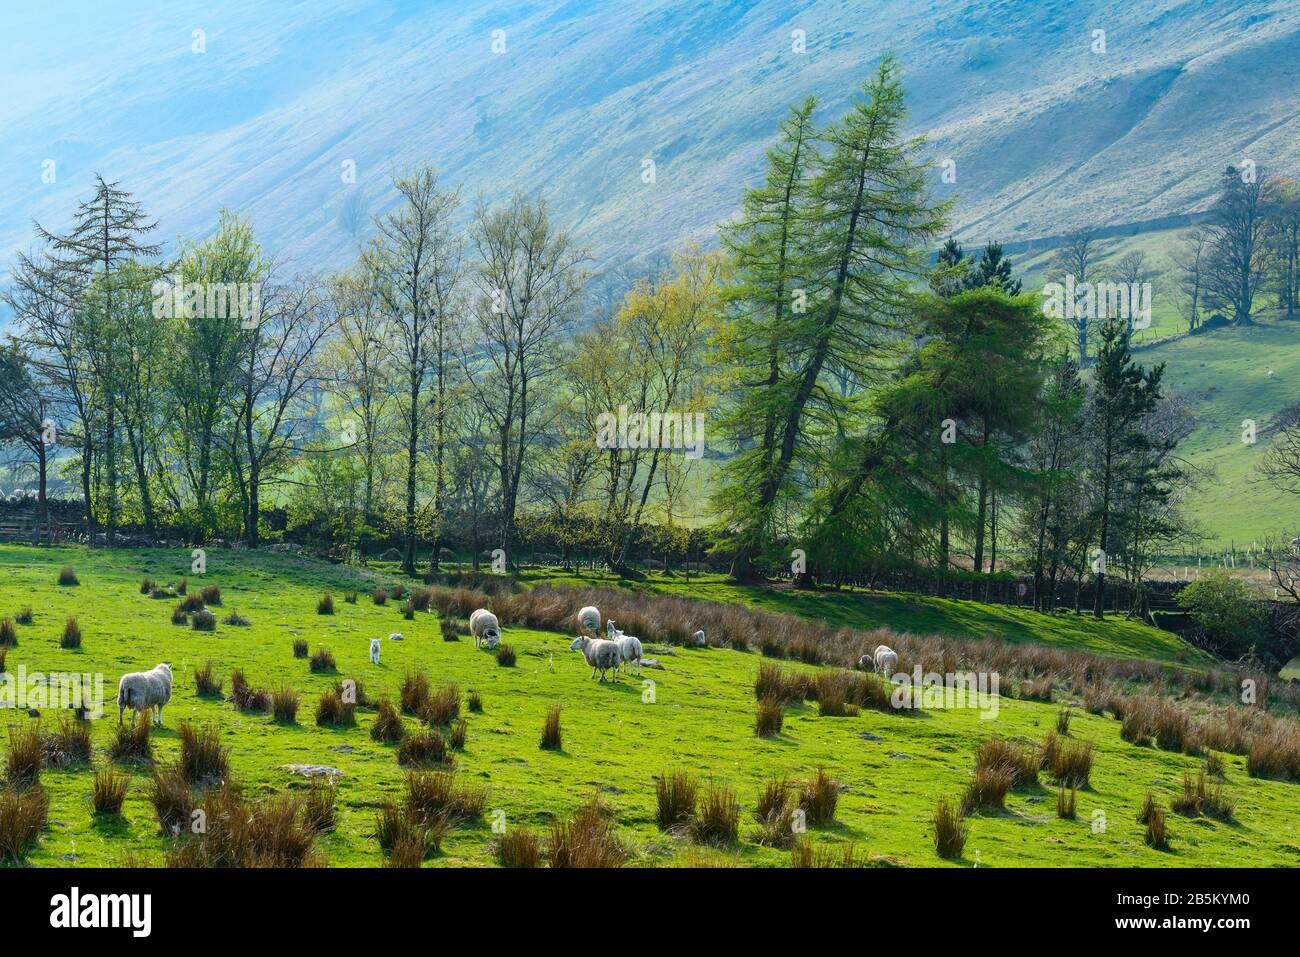 Les moutons paissent sur de l'herbe verte vive pendant la saison de lambing sur les pentes inférieures de Birkhouse Moor près de Patterdale, Lake District, Cumbria, Royaume-Uni, en avril. Banque D'Images